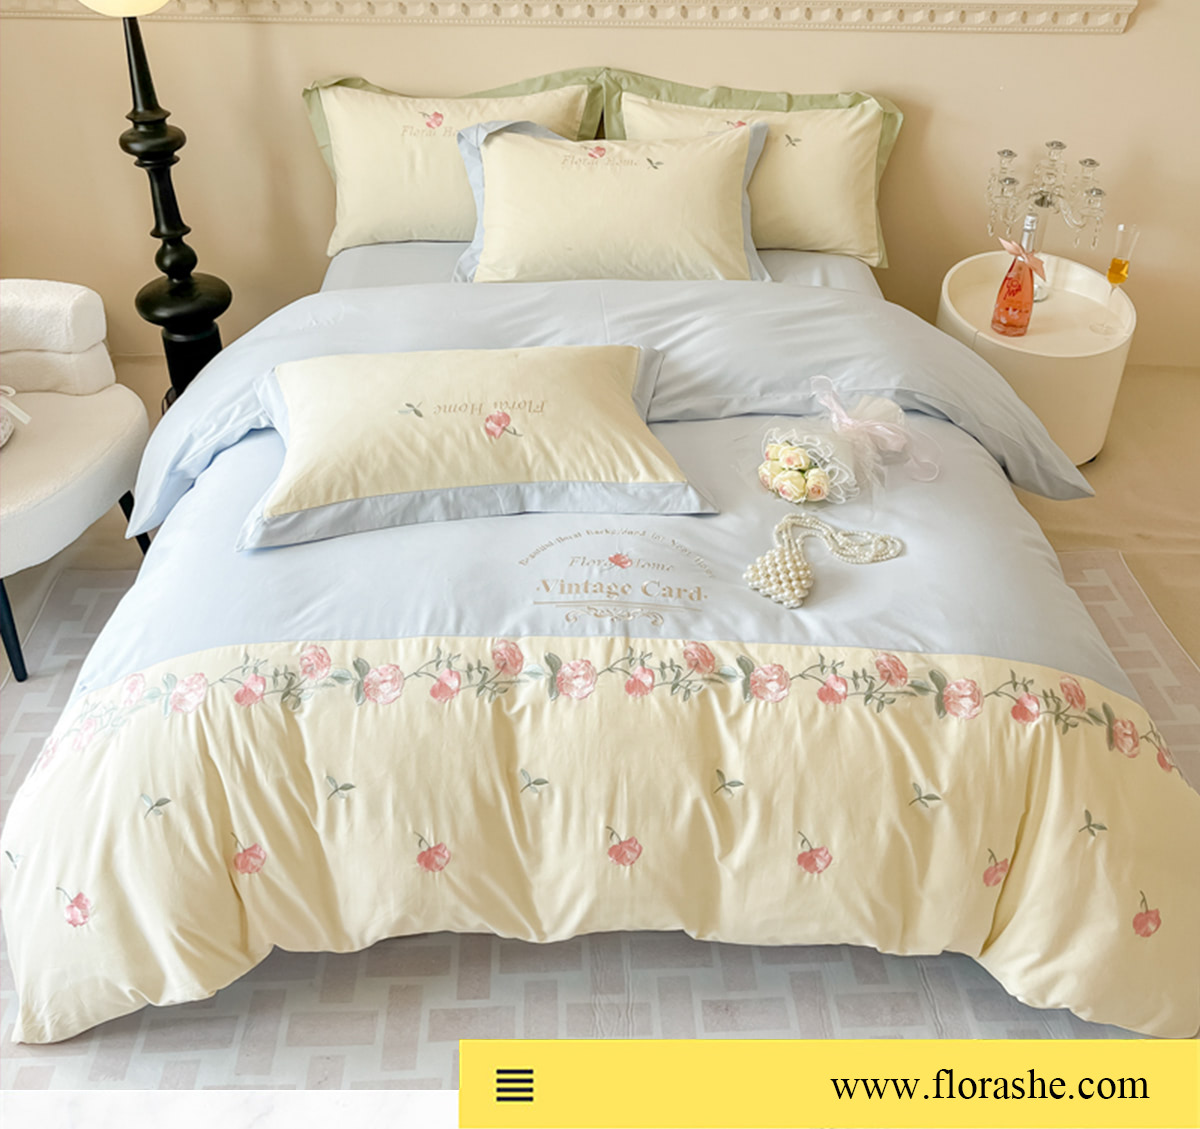 Vintage-Floral-Soft-Brushed-Cotton-Embroidery-Bedsheets-Set21